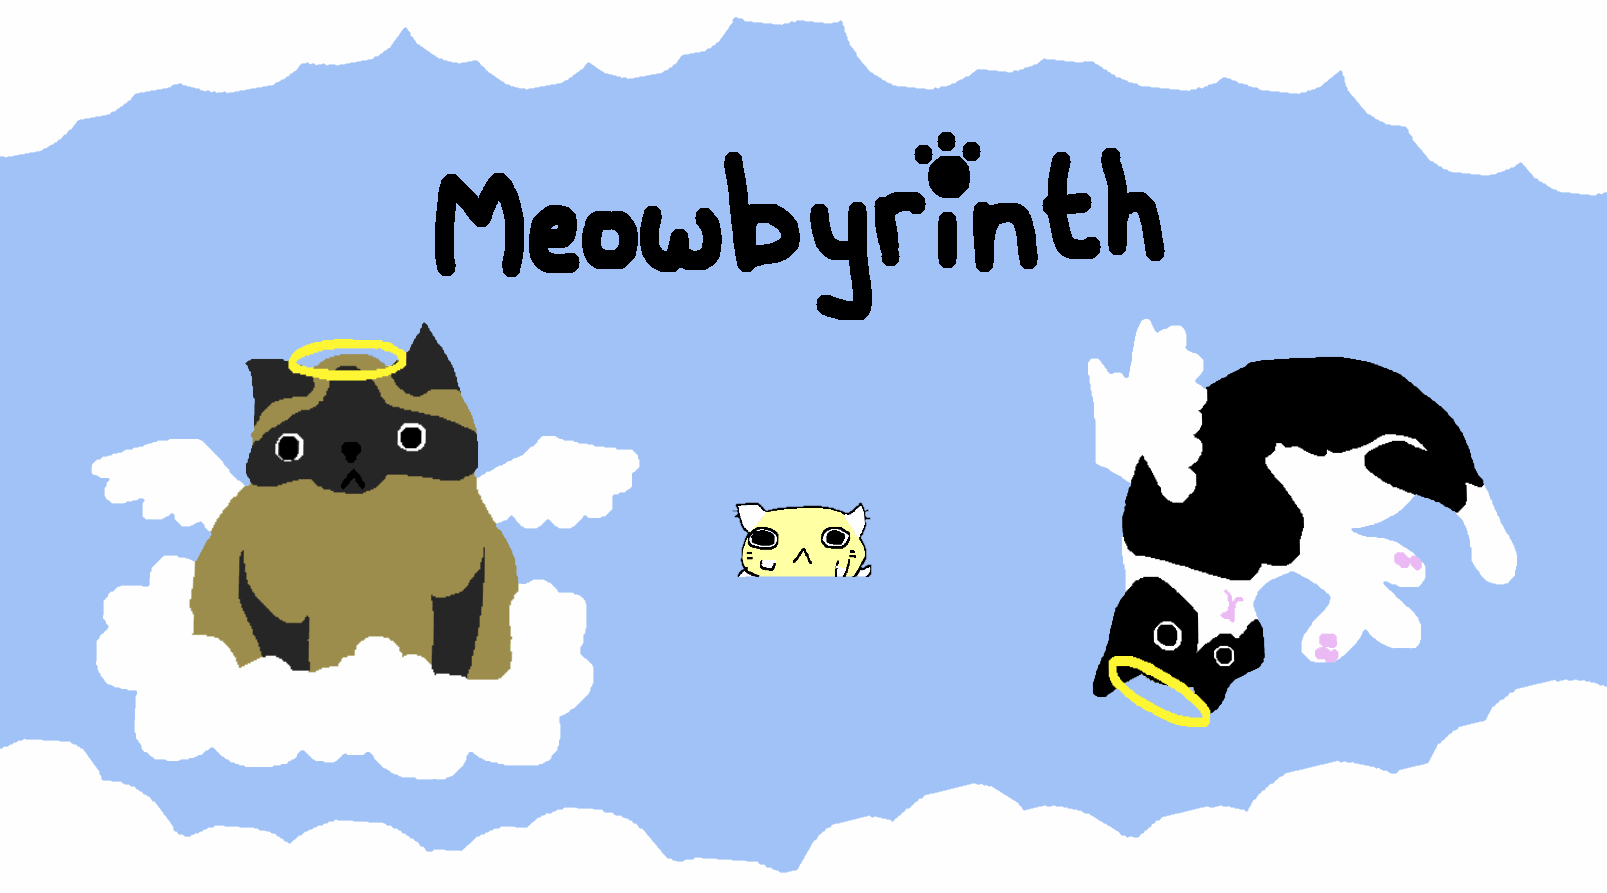 MeowByrinth